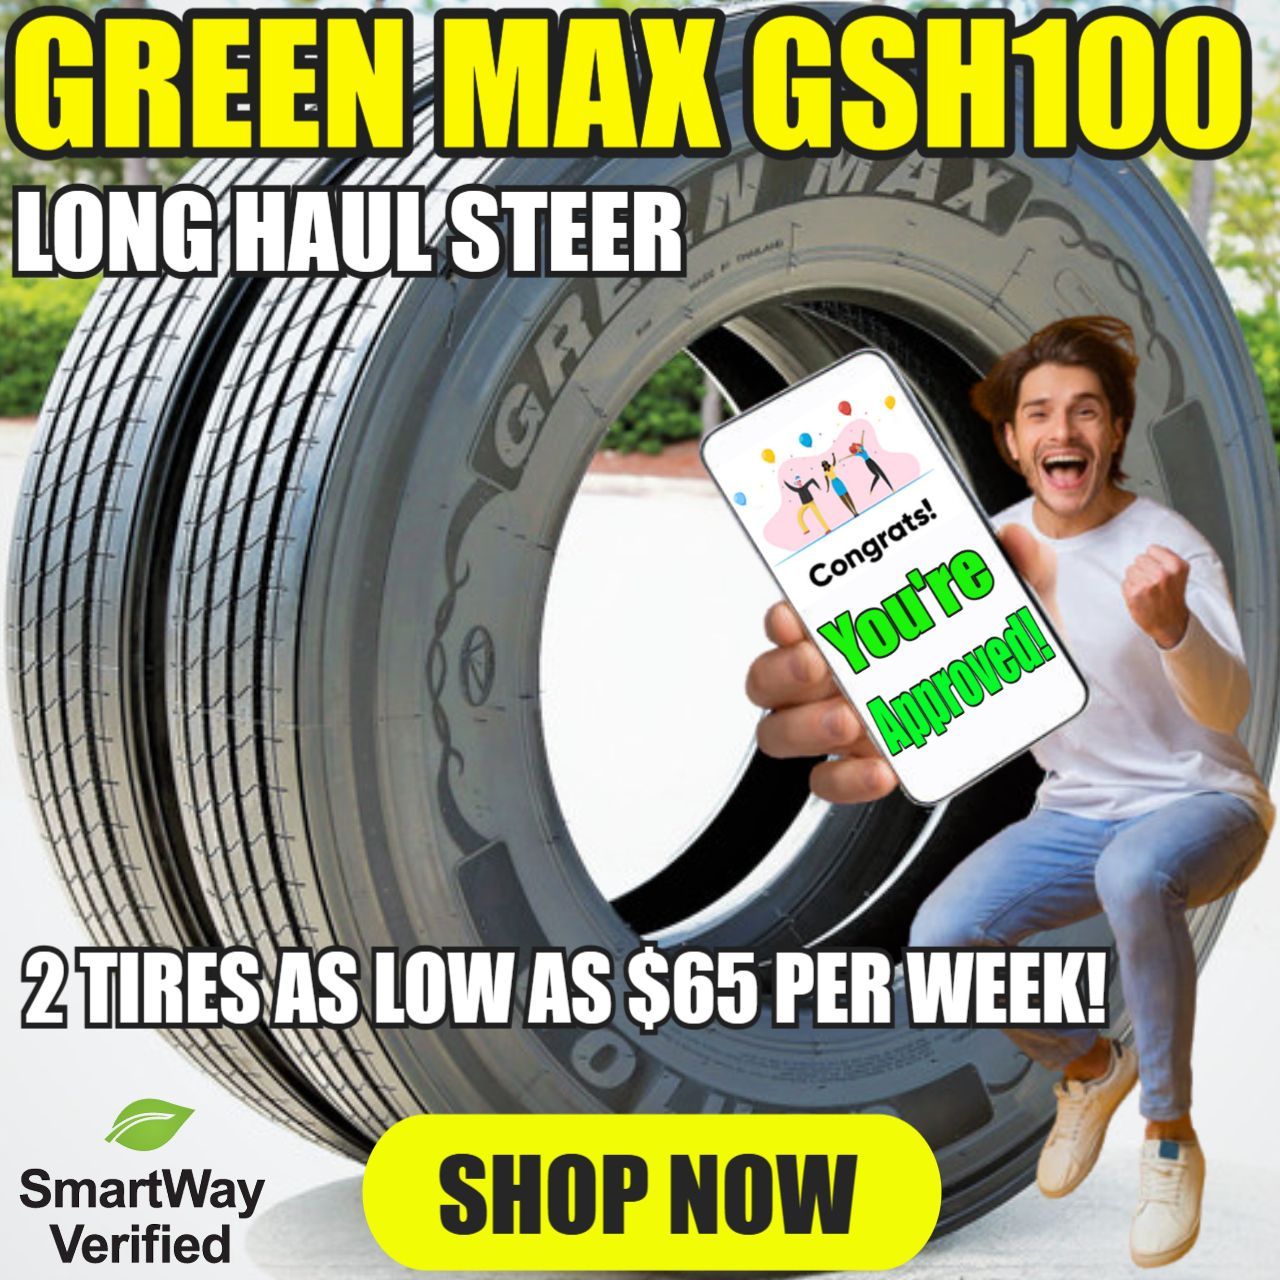 Green Max GSH100 no credit financing